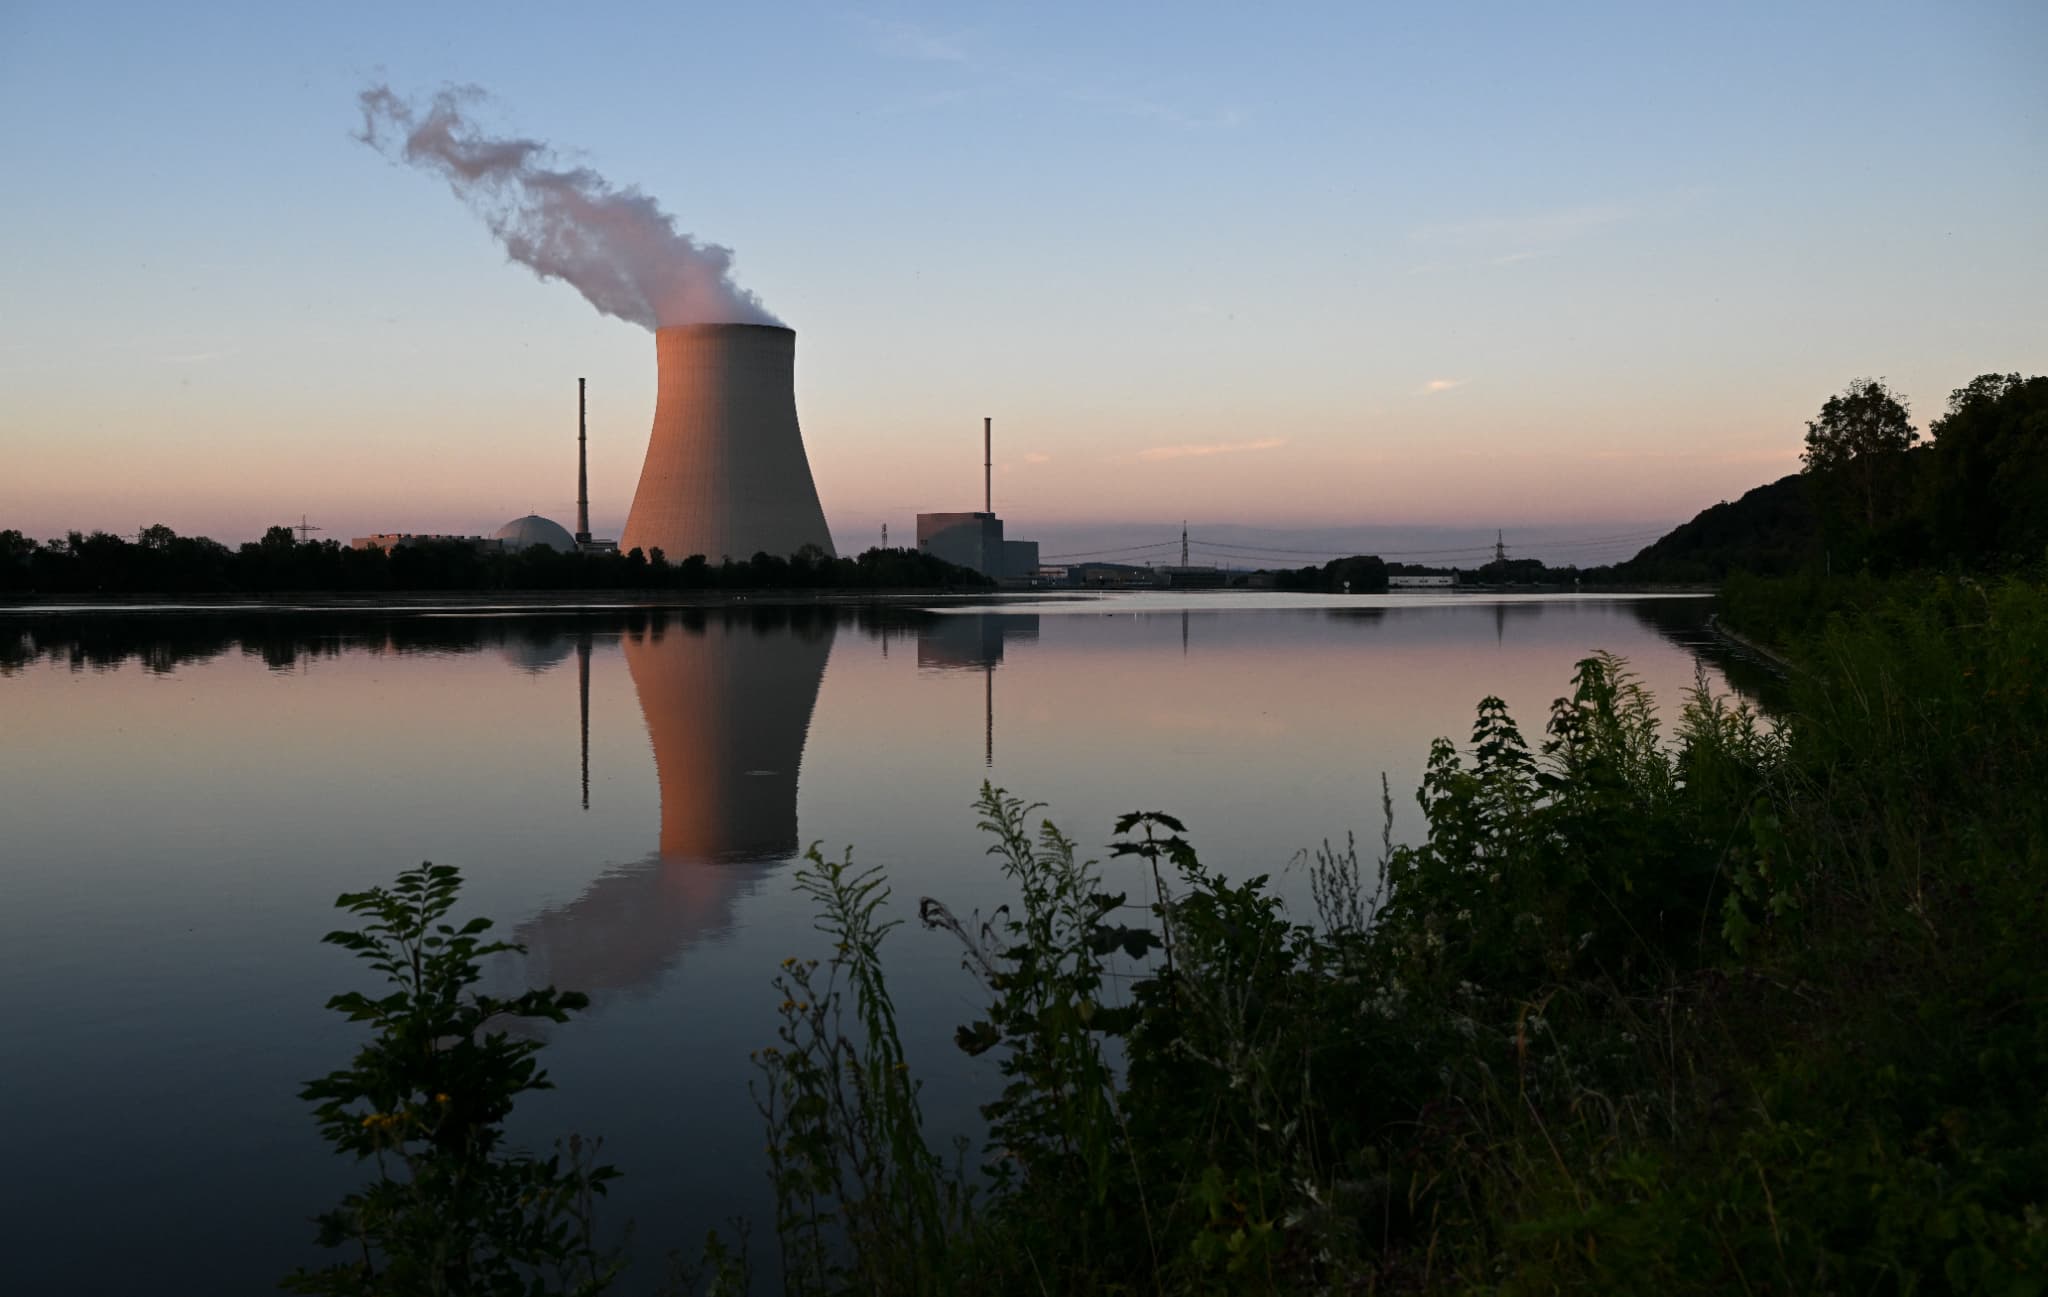 allemagne: les centrales nucléaires seront-elles bientôt rebranchées?